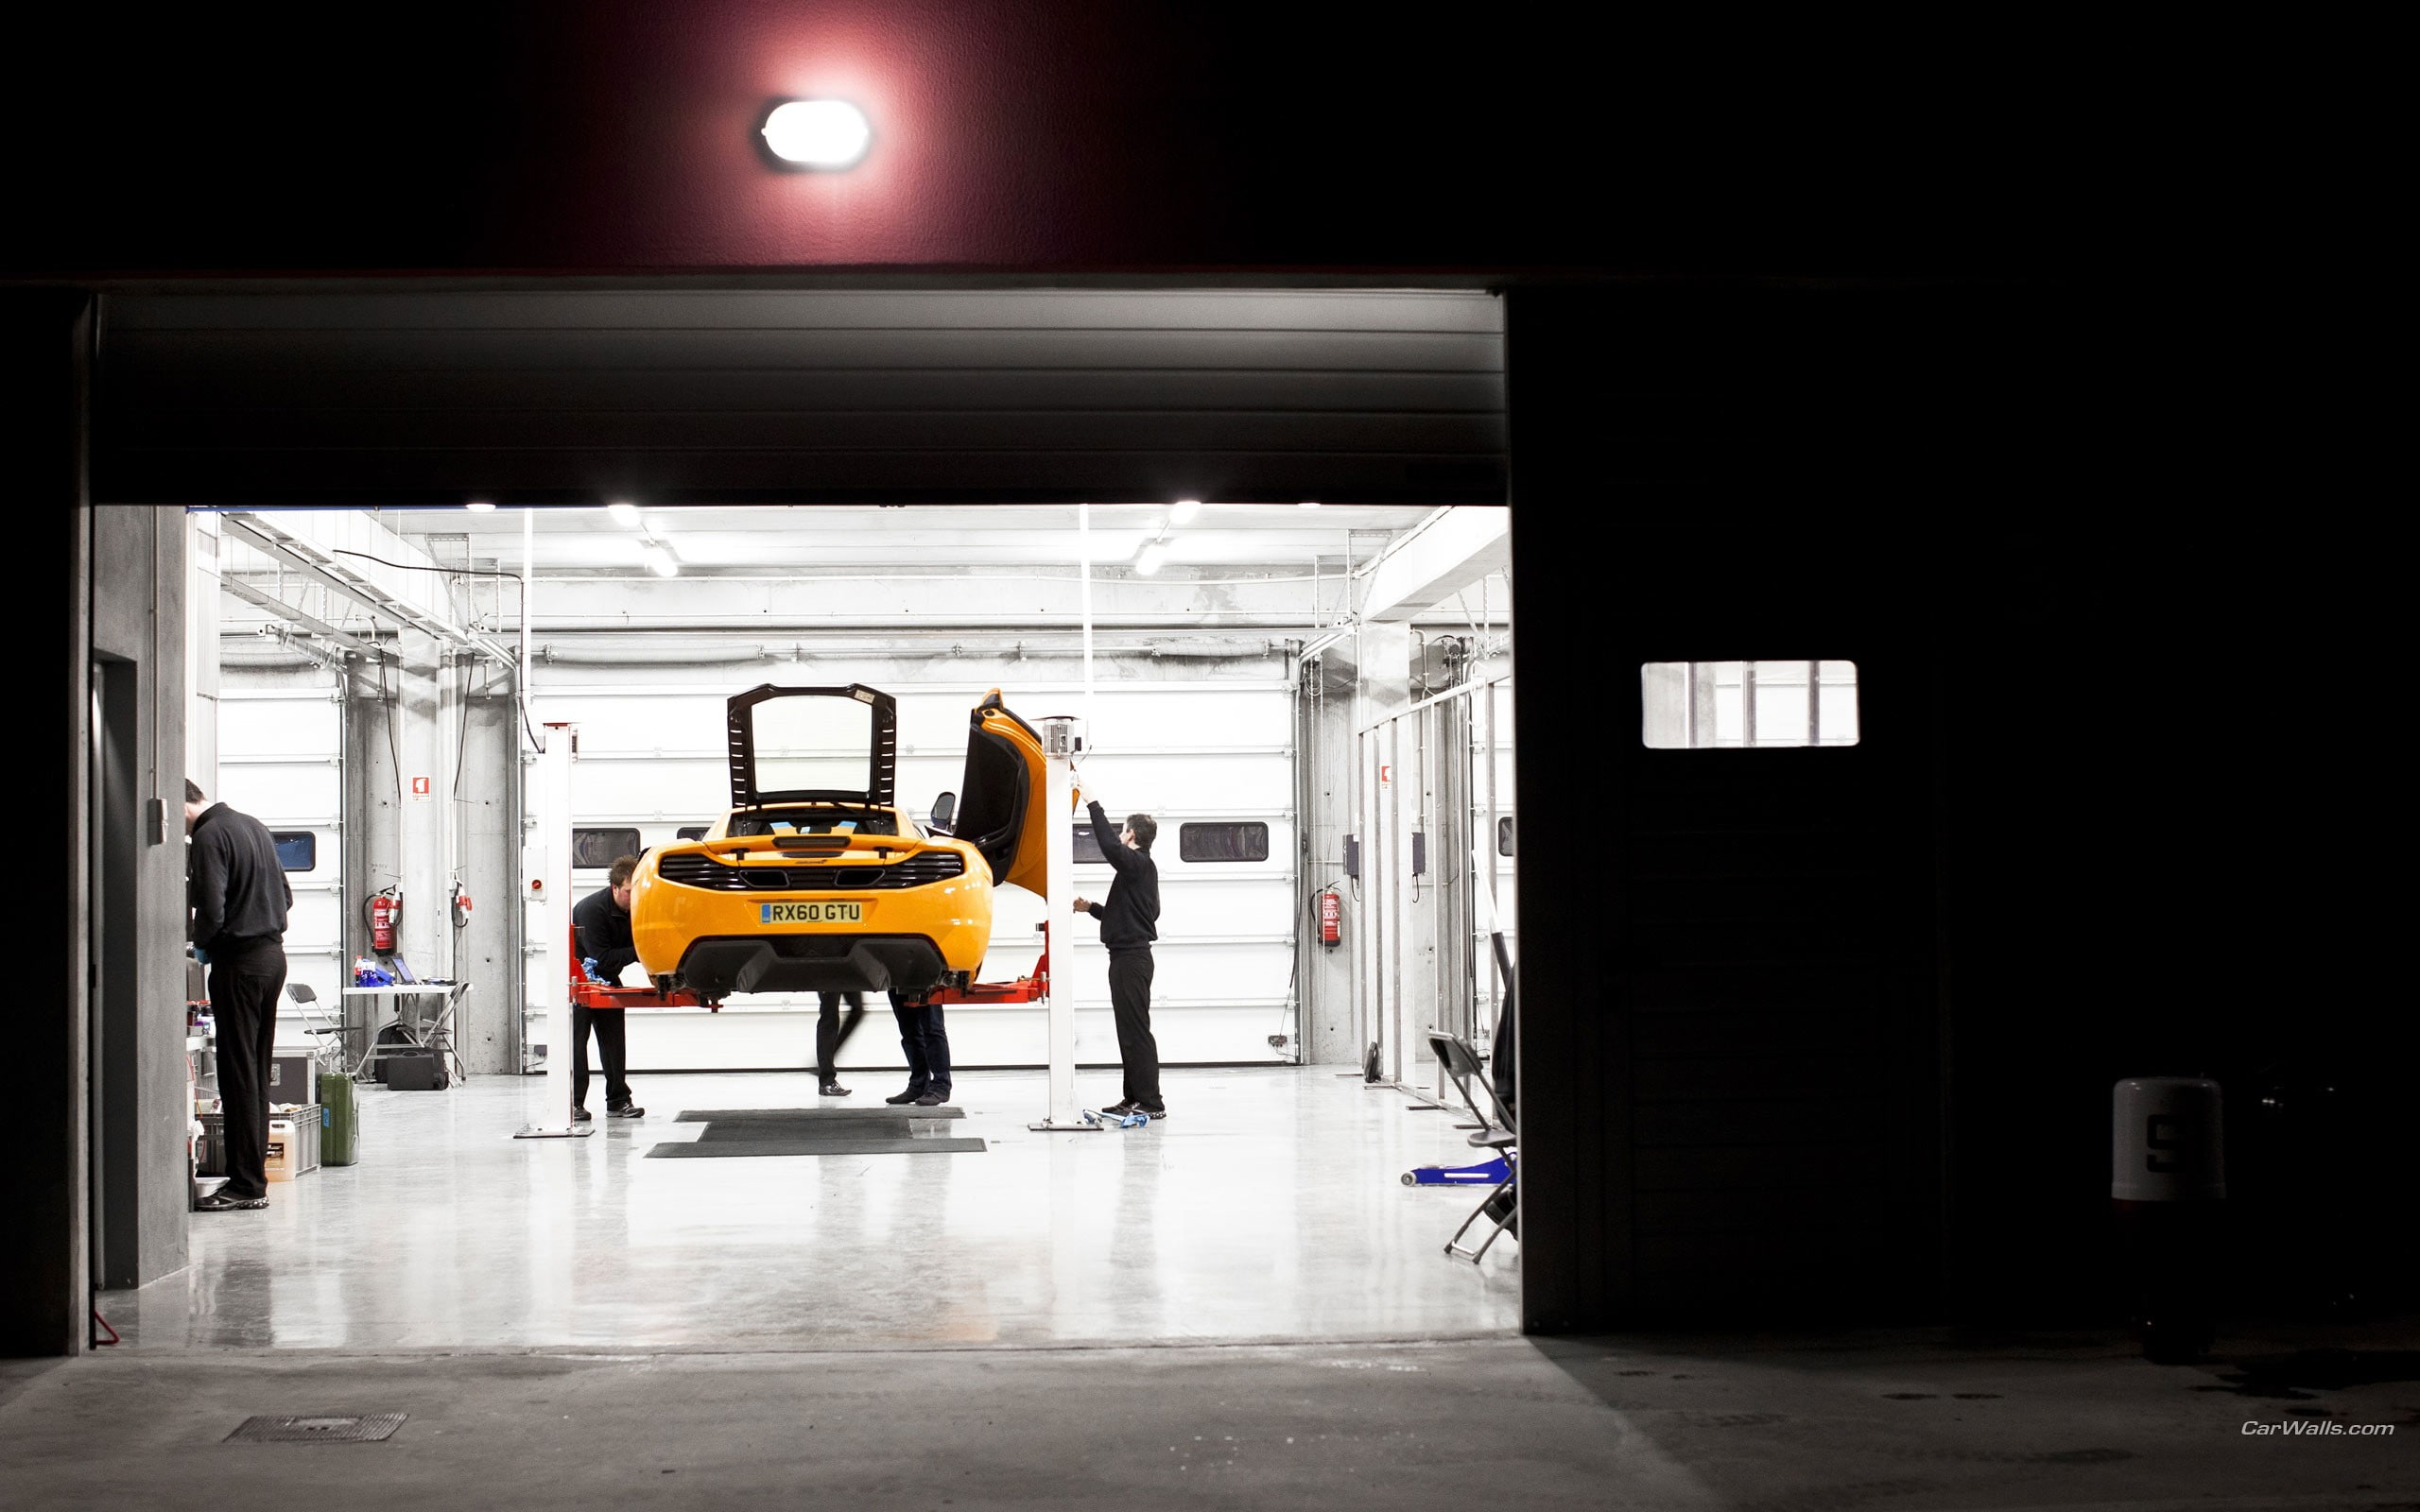 McLaren MP4-12C Garage HD, yellow sports car, cars